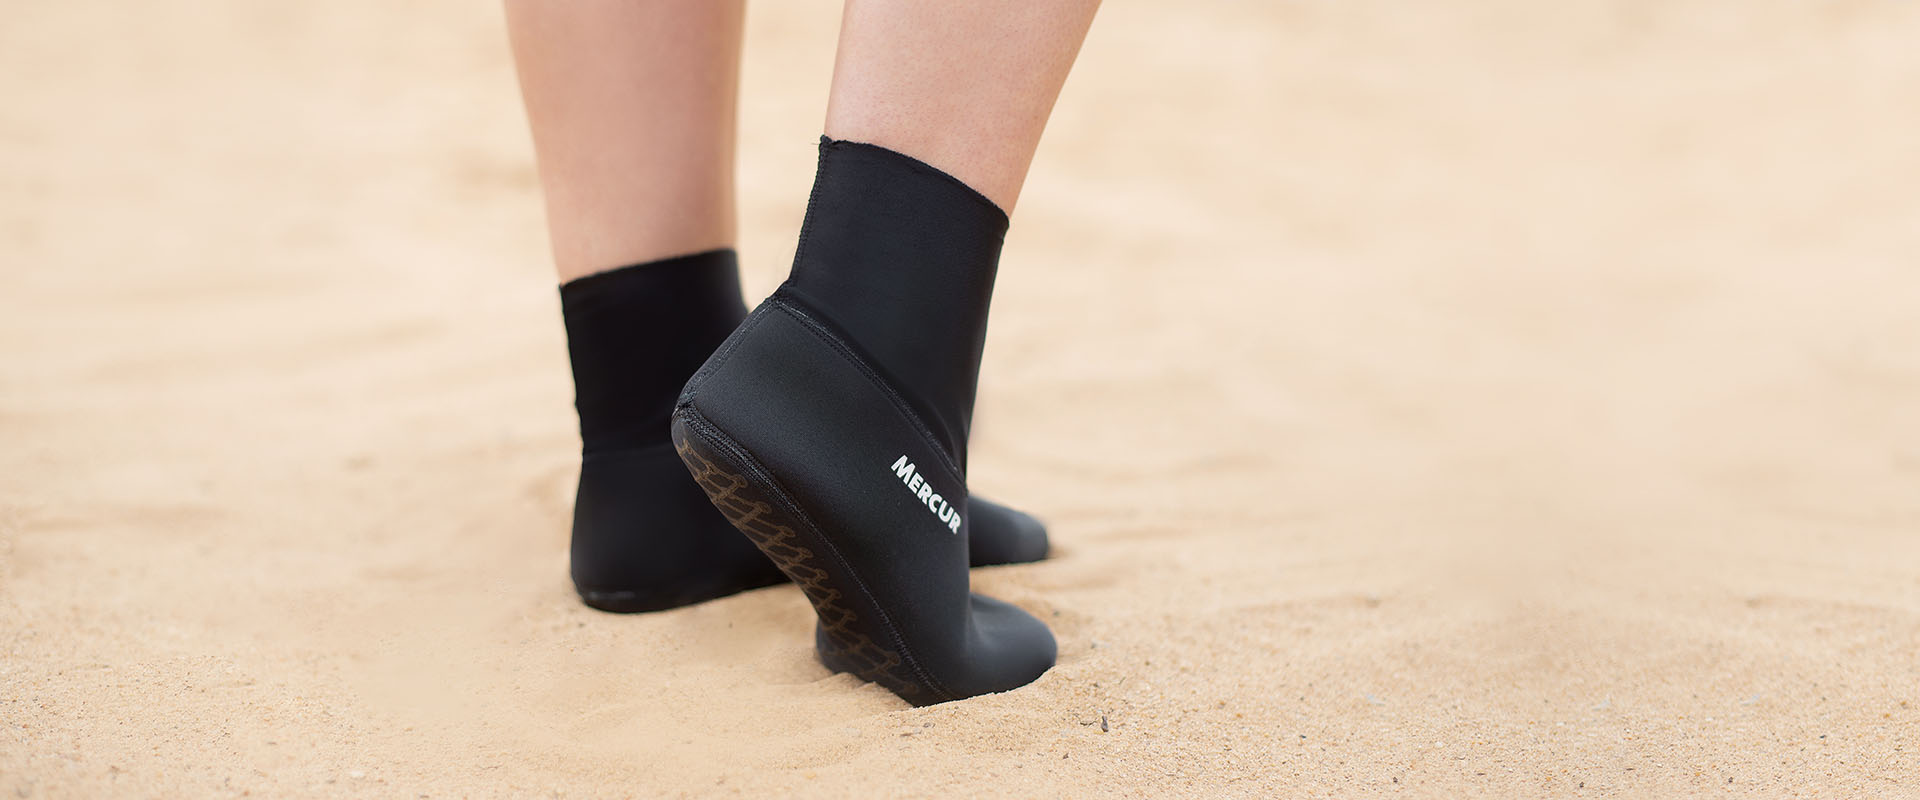 Sapatilha esportiva: calçado que faz diferença nos treinos na areia